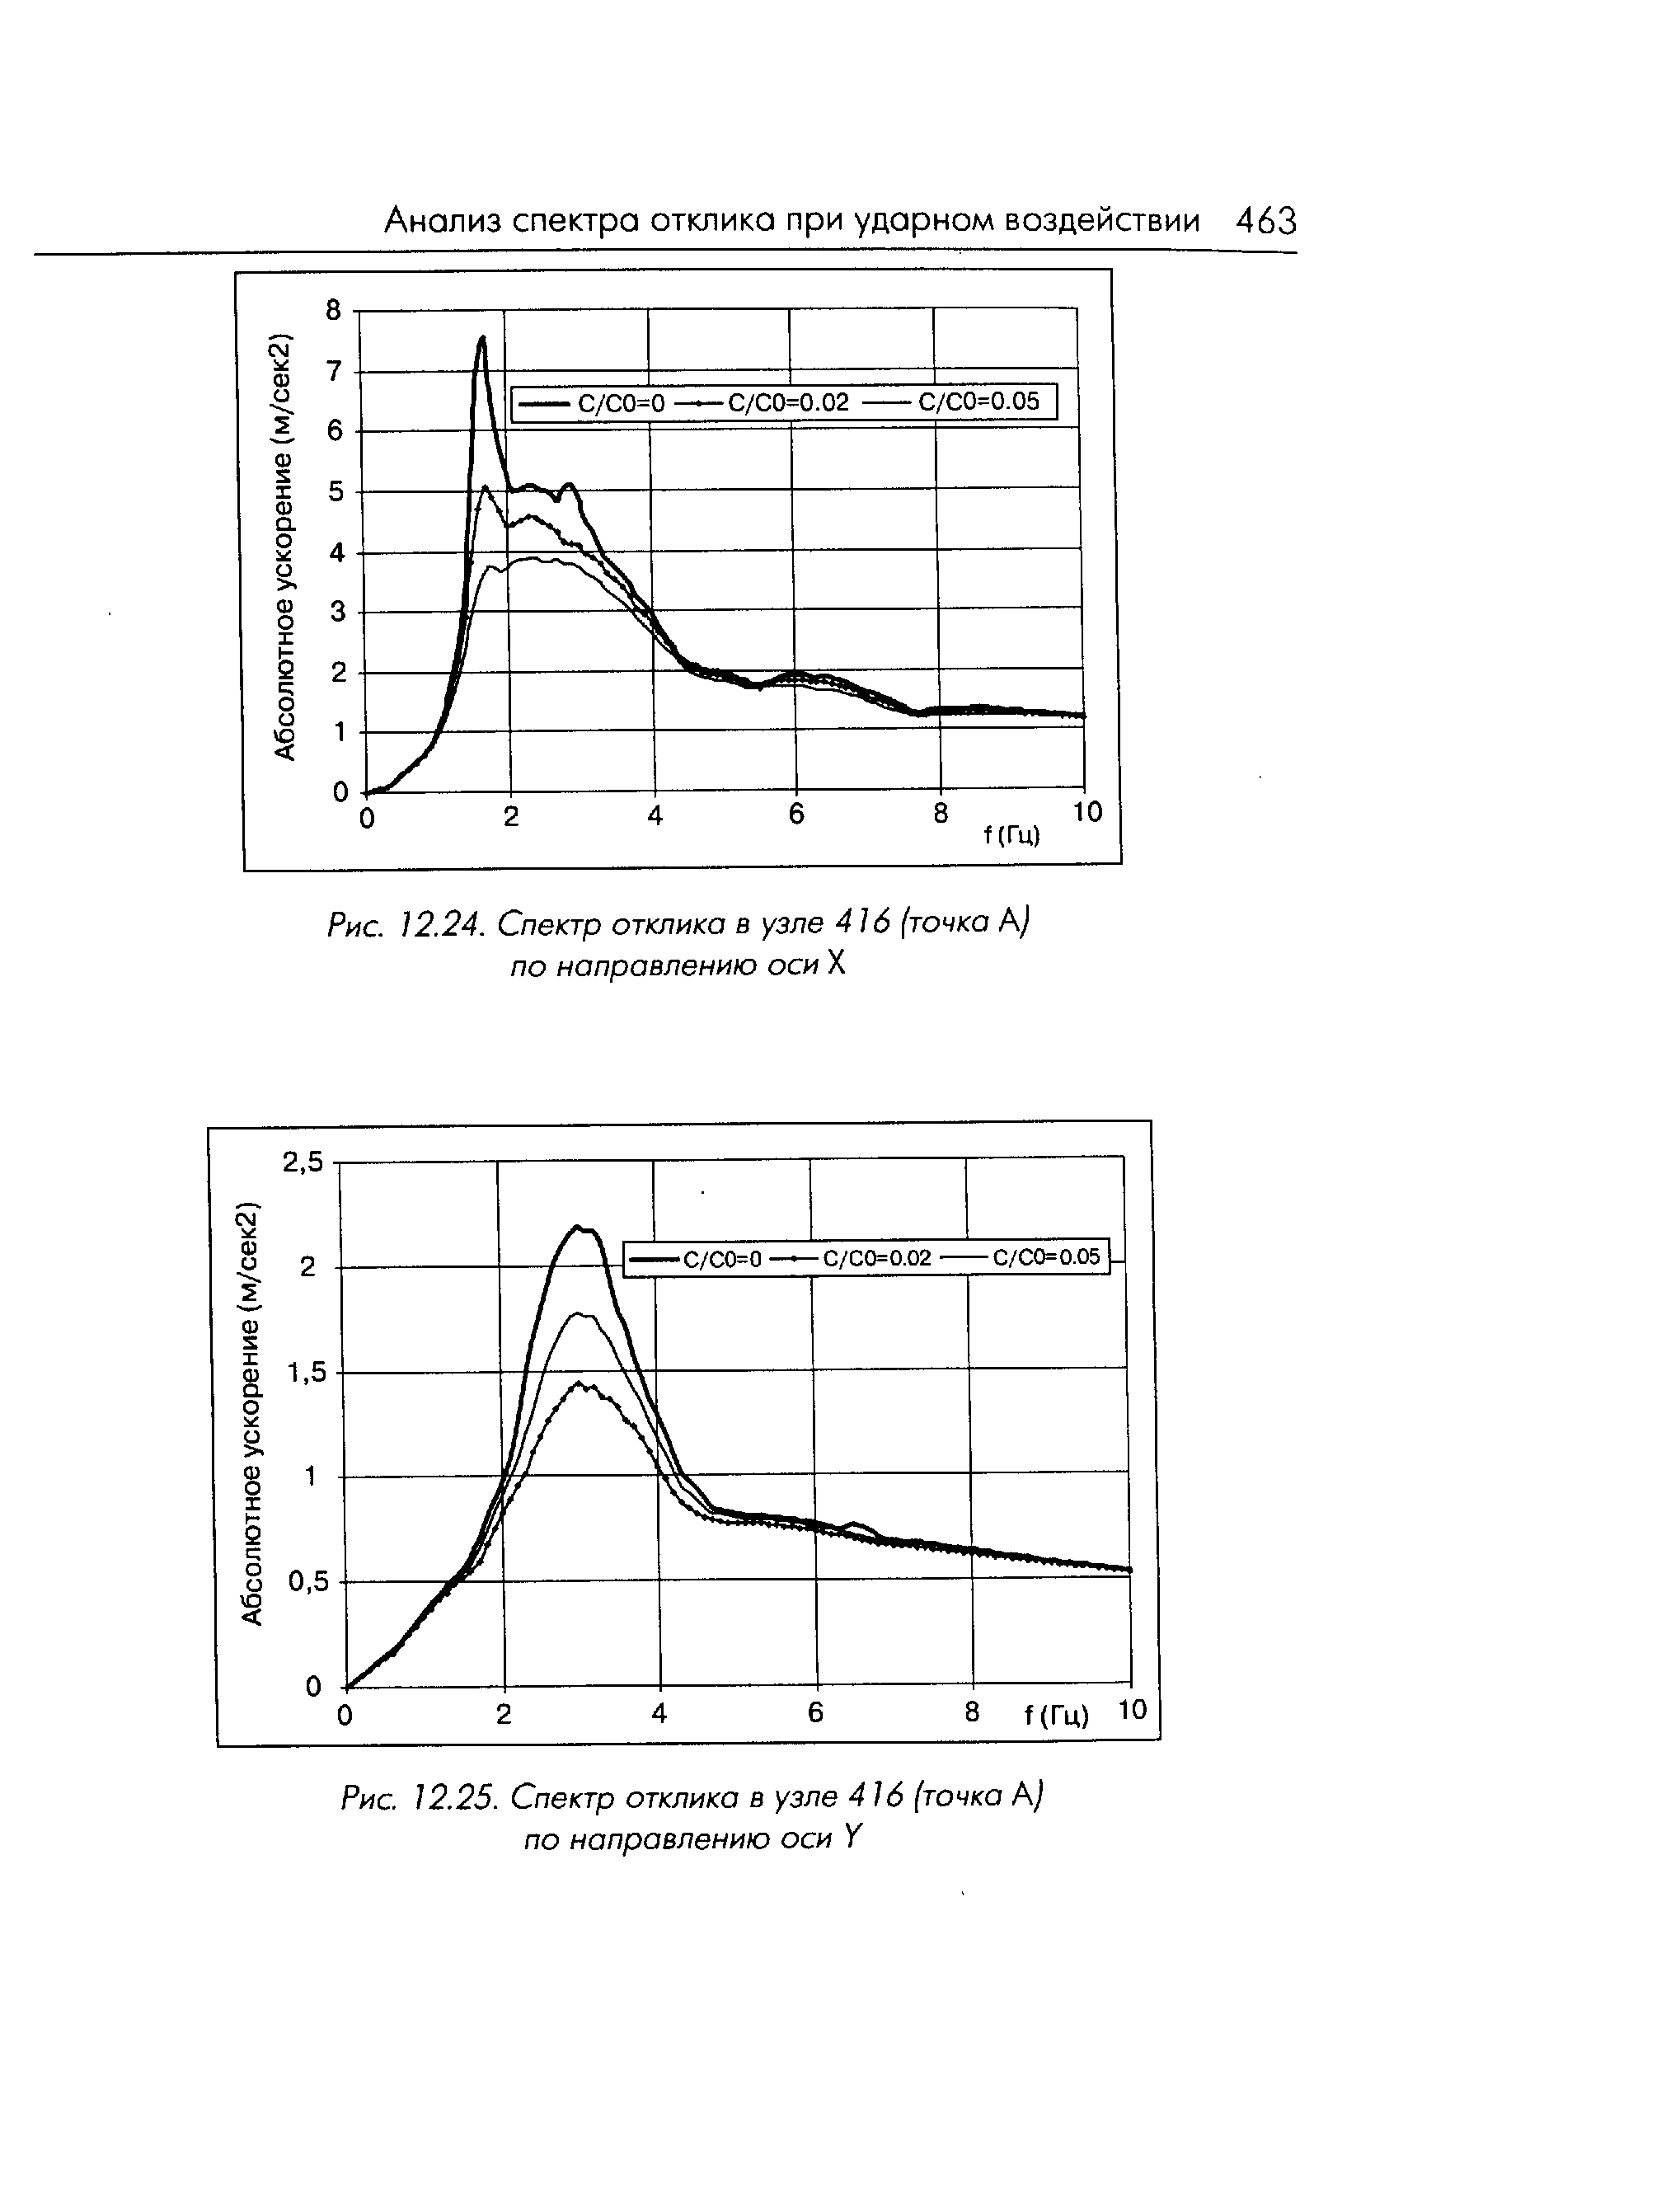 Рис. 12.24. Спектр отклика в узле 416 (точка А) по направлению оси X
